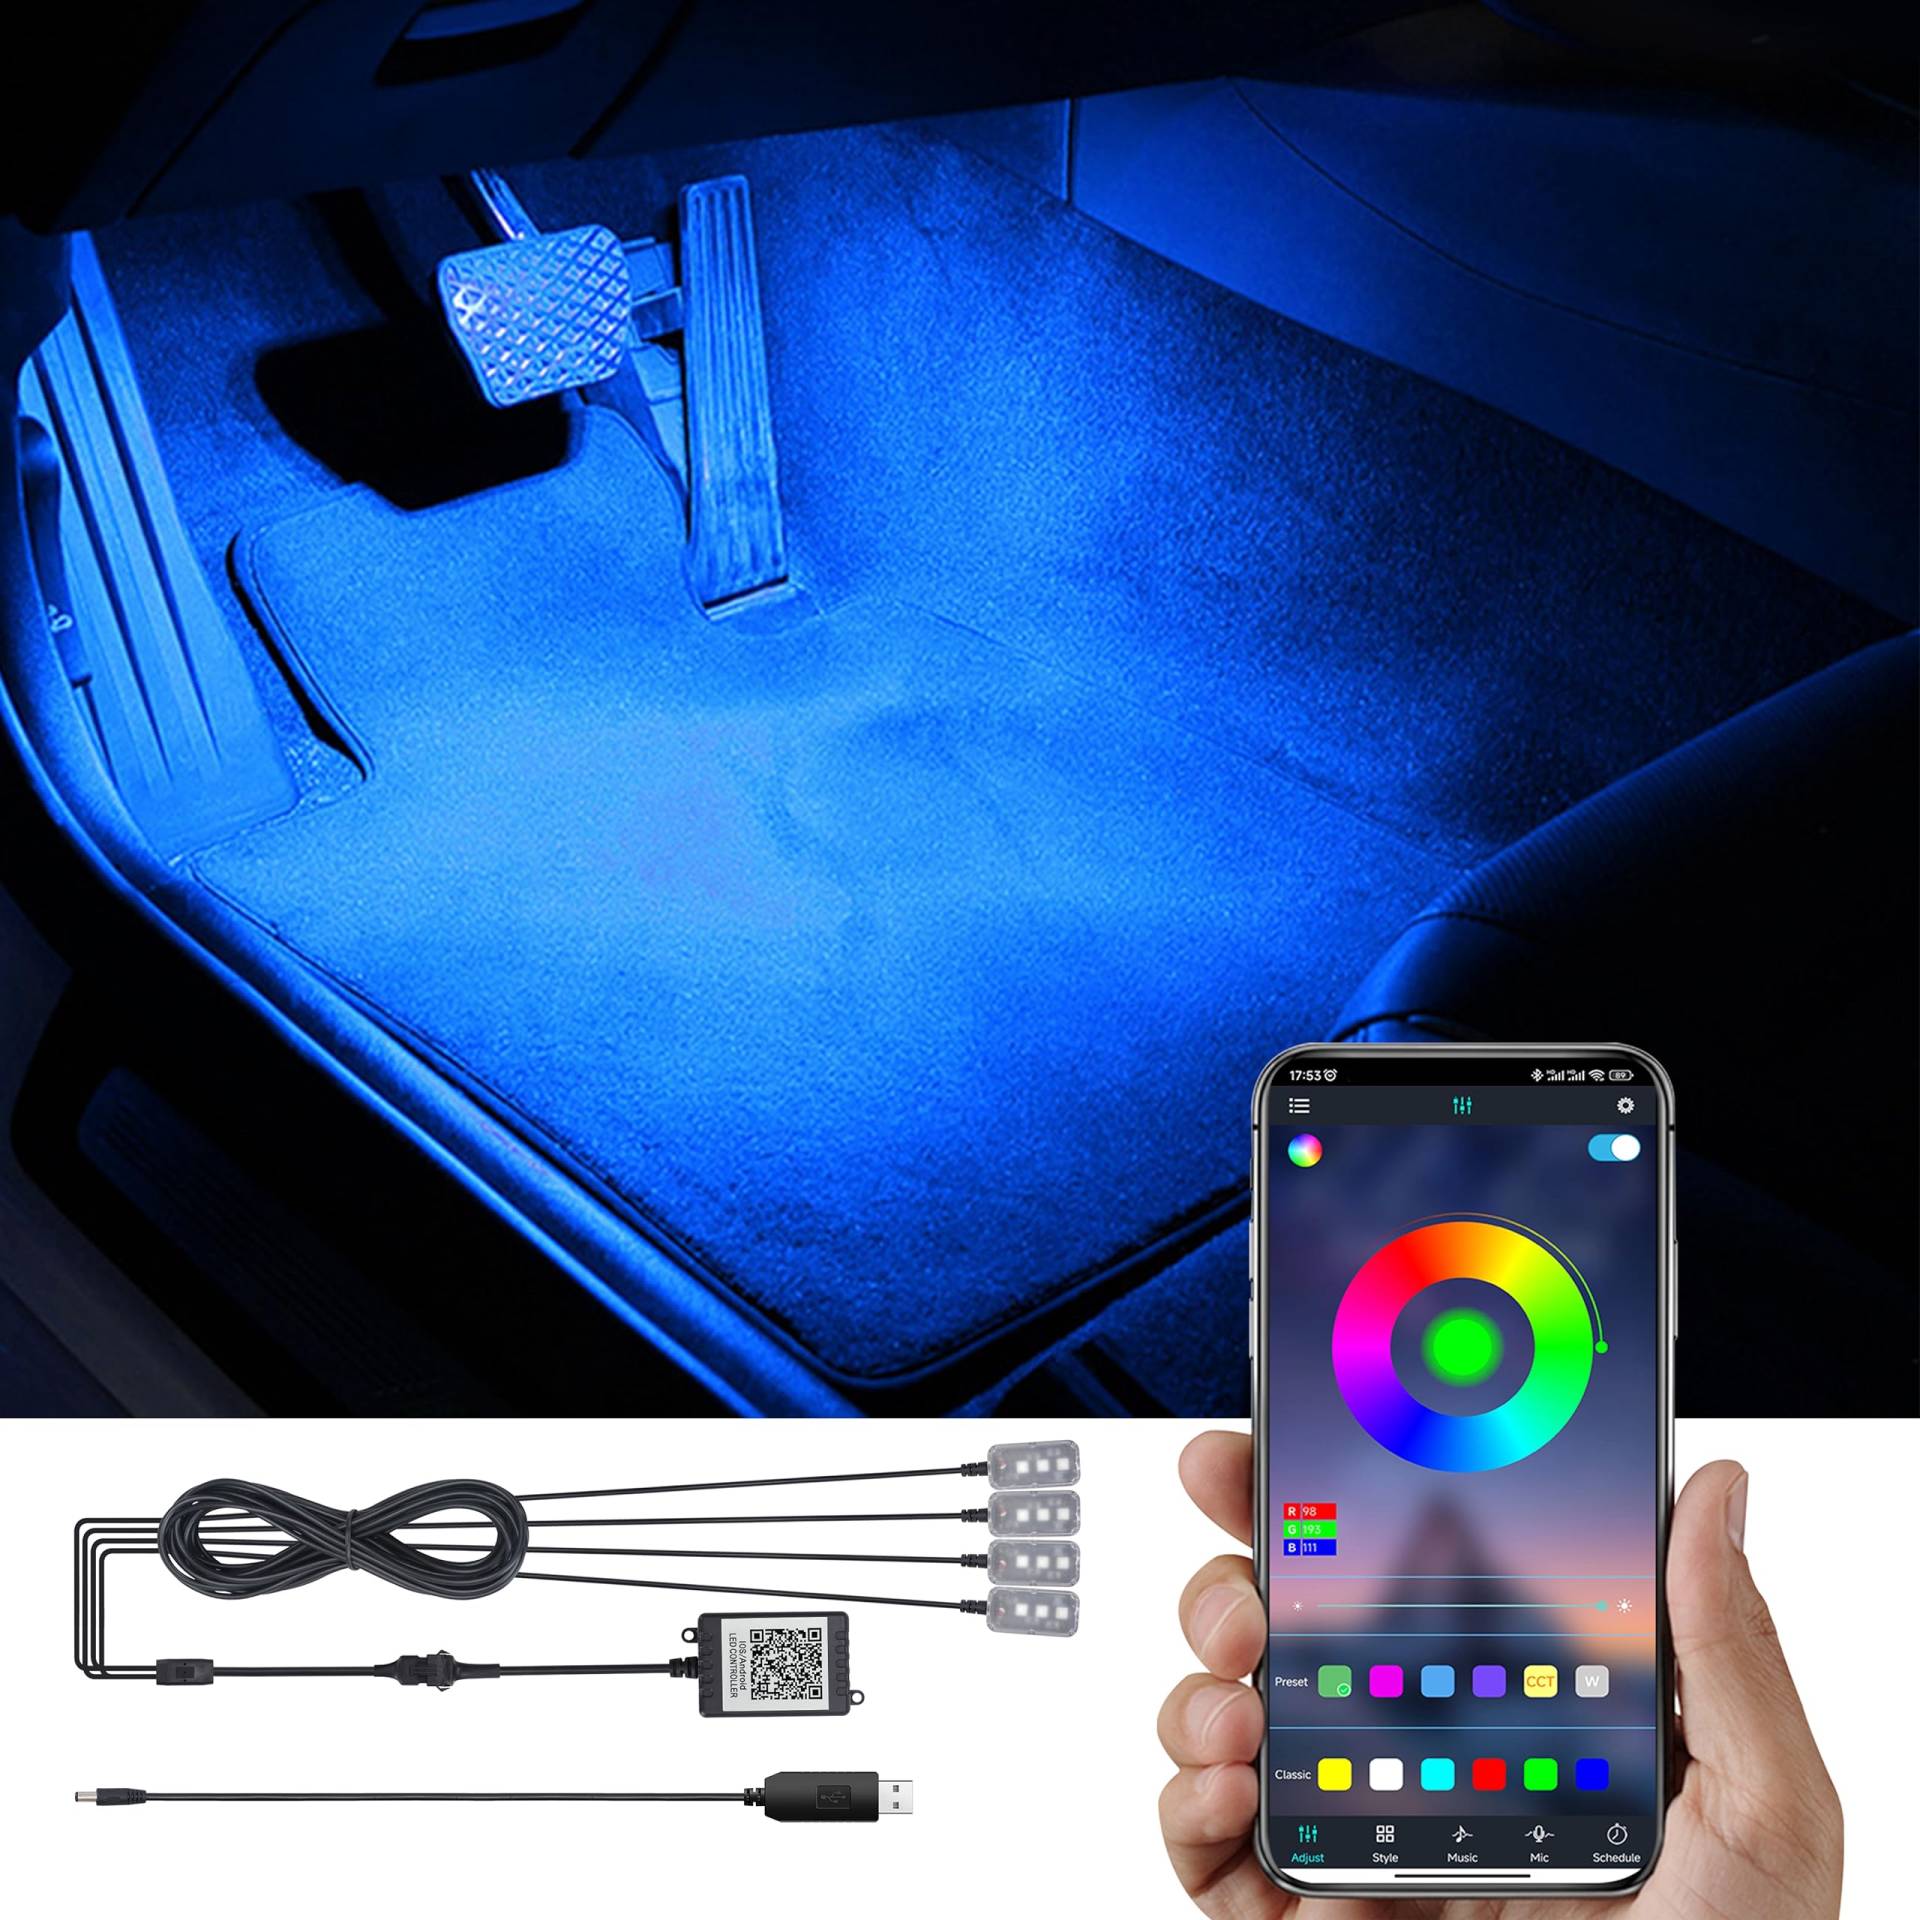 TABEN RGB Auto Fußraum Ambientebeleuchtung Kit APP-Steuerung 16.7 Millionen Farben Sound Aktive Musik Sync USB Kabel Car Innenraum Fußraum Atmosphäre Licht DC 12V von TABEN